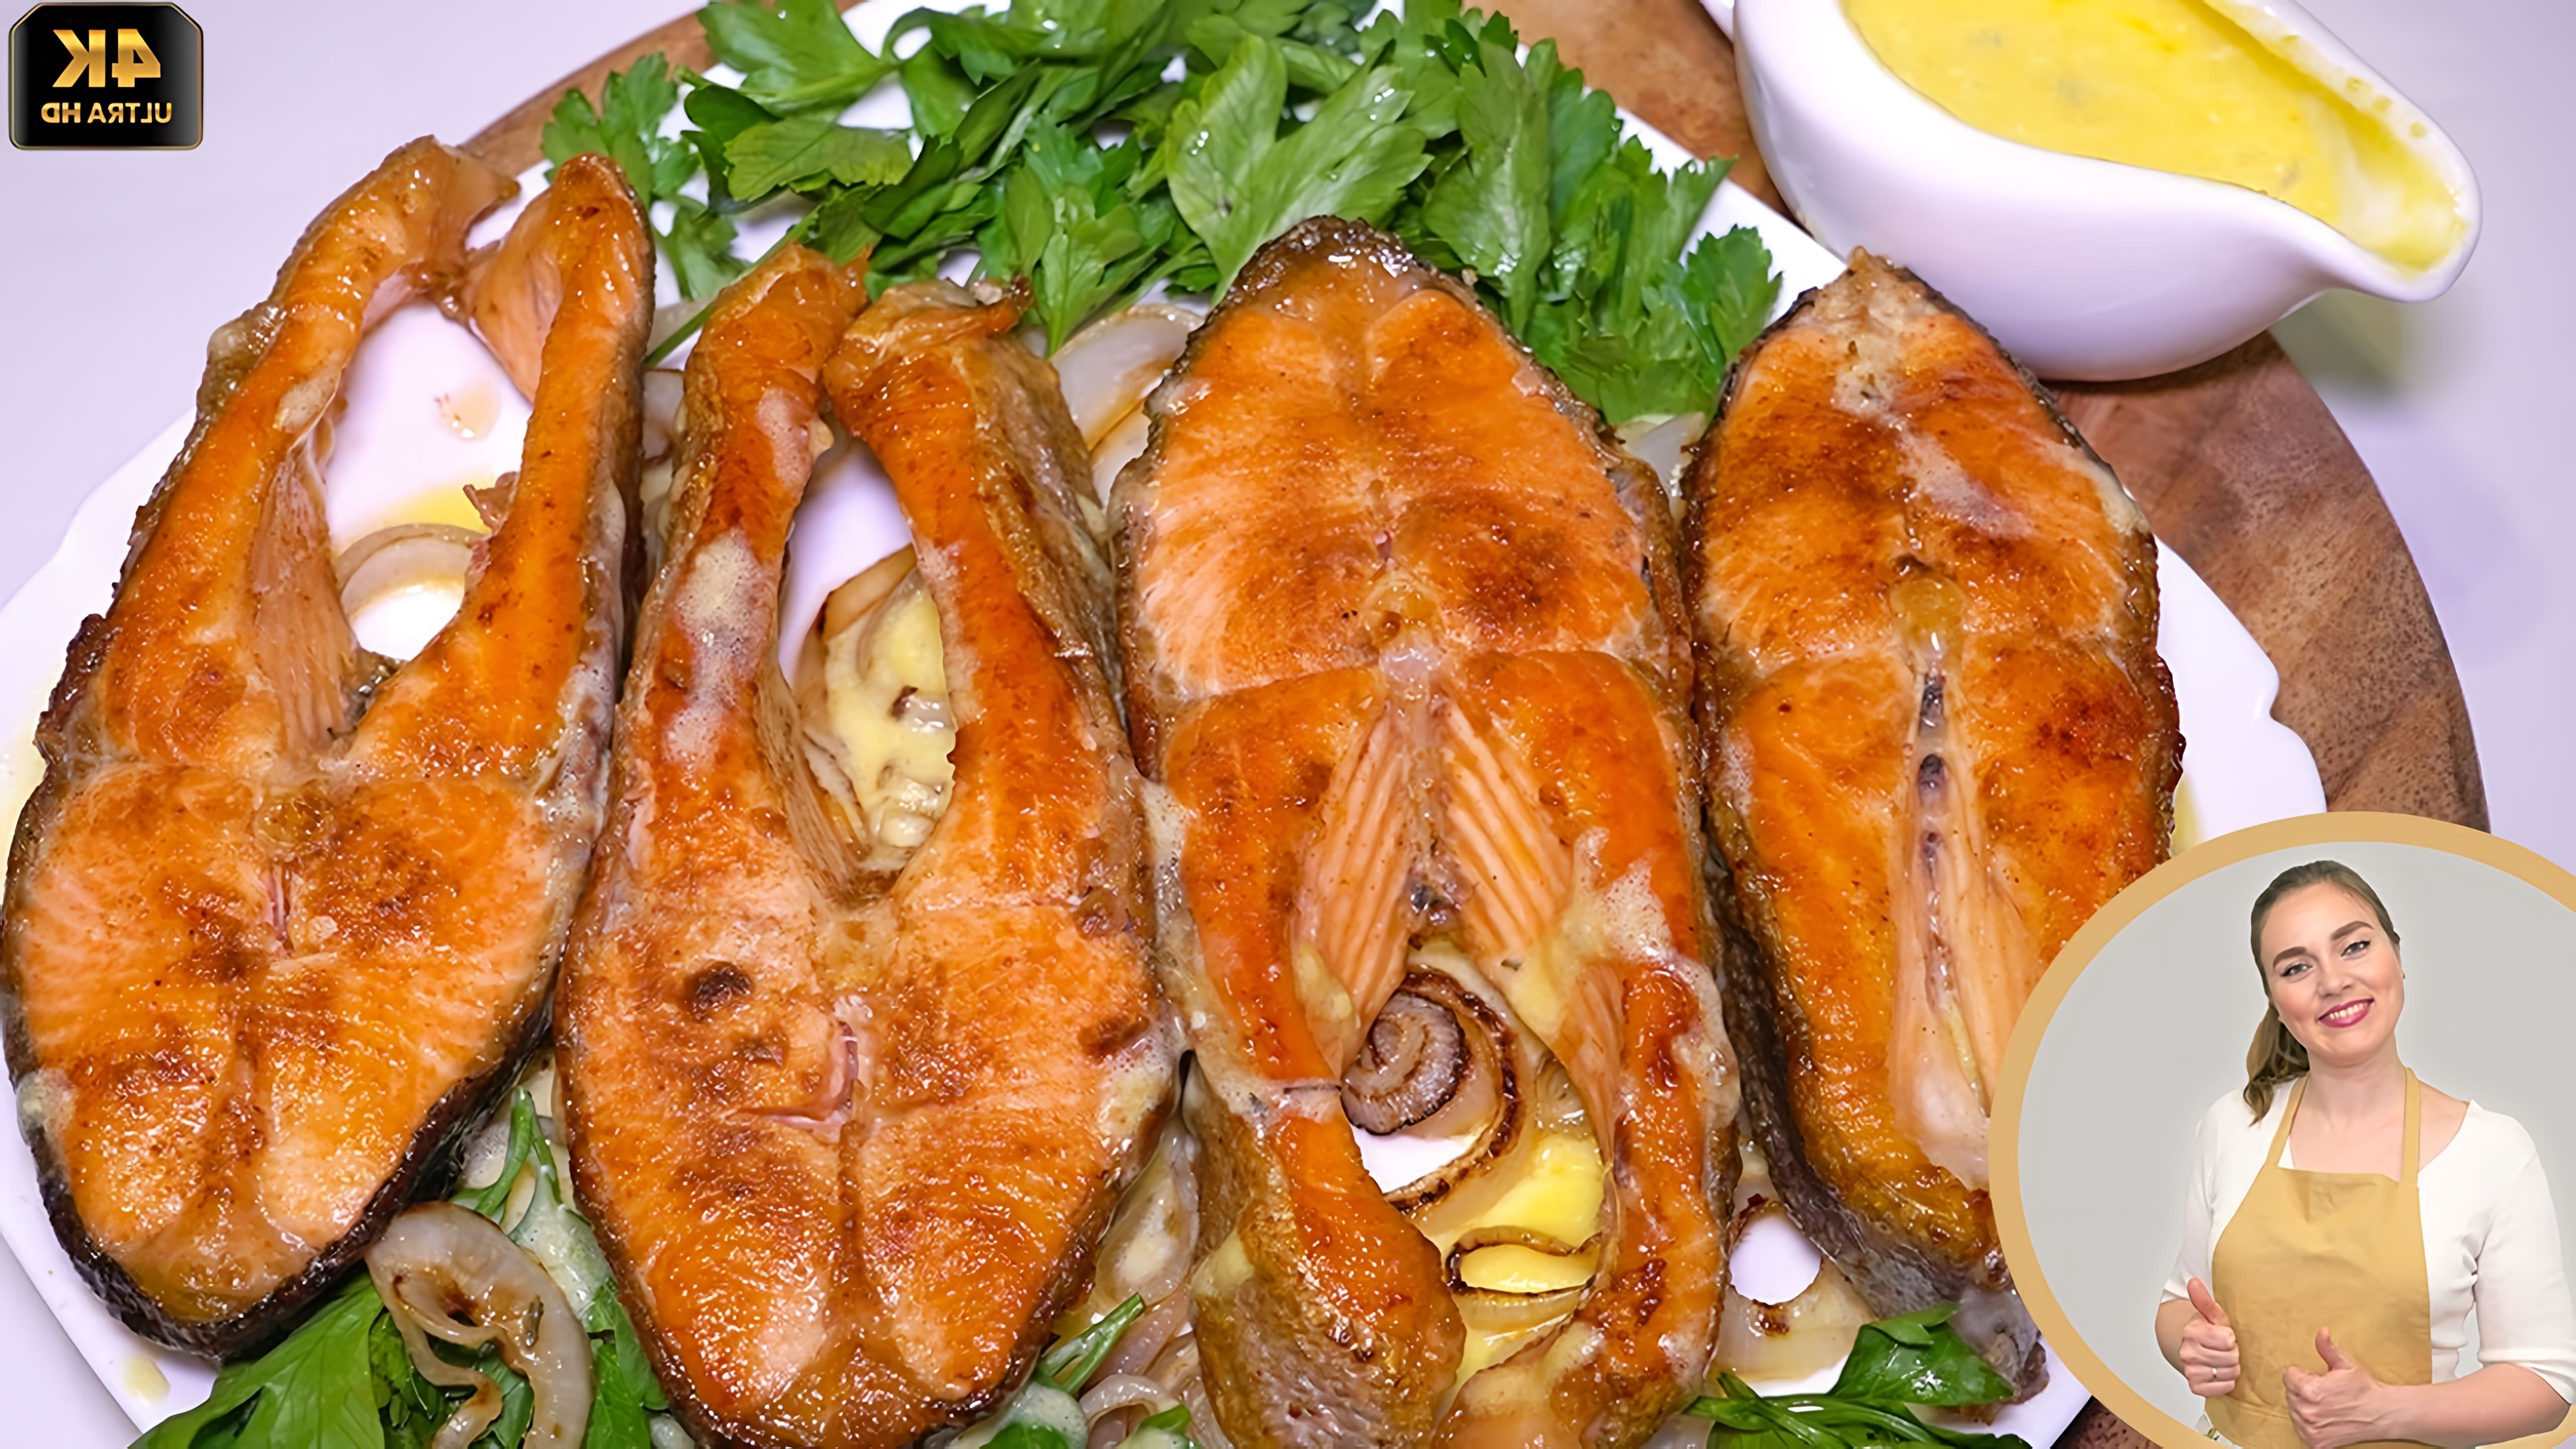 В этом видео демонстрируется рецепт приготовления красной рыбы в сливочном соусе